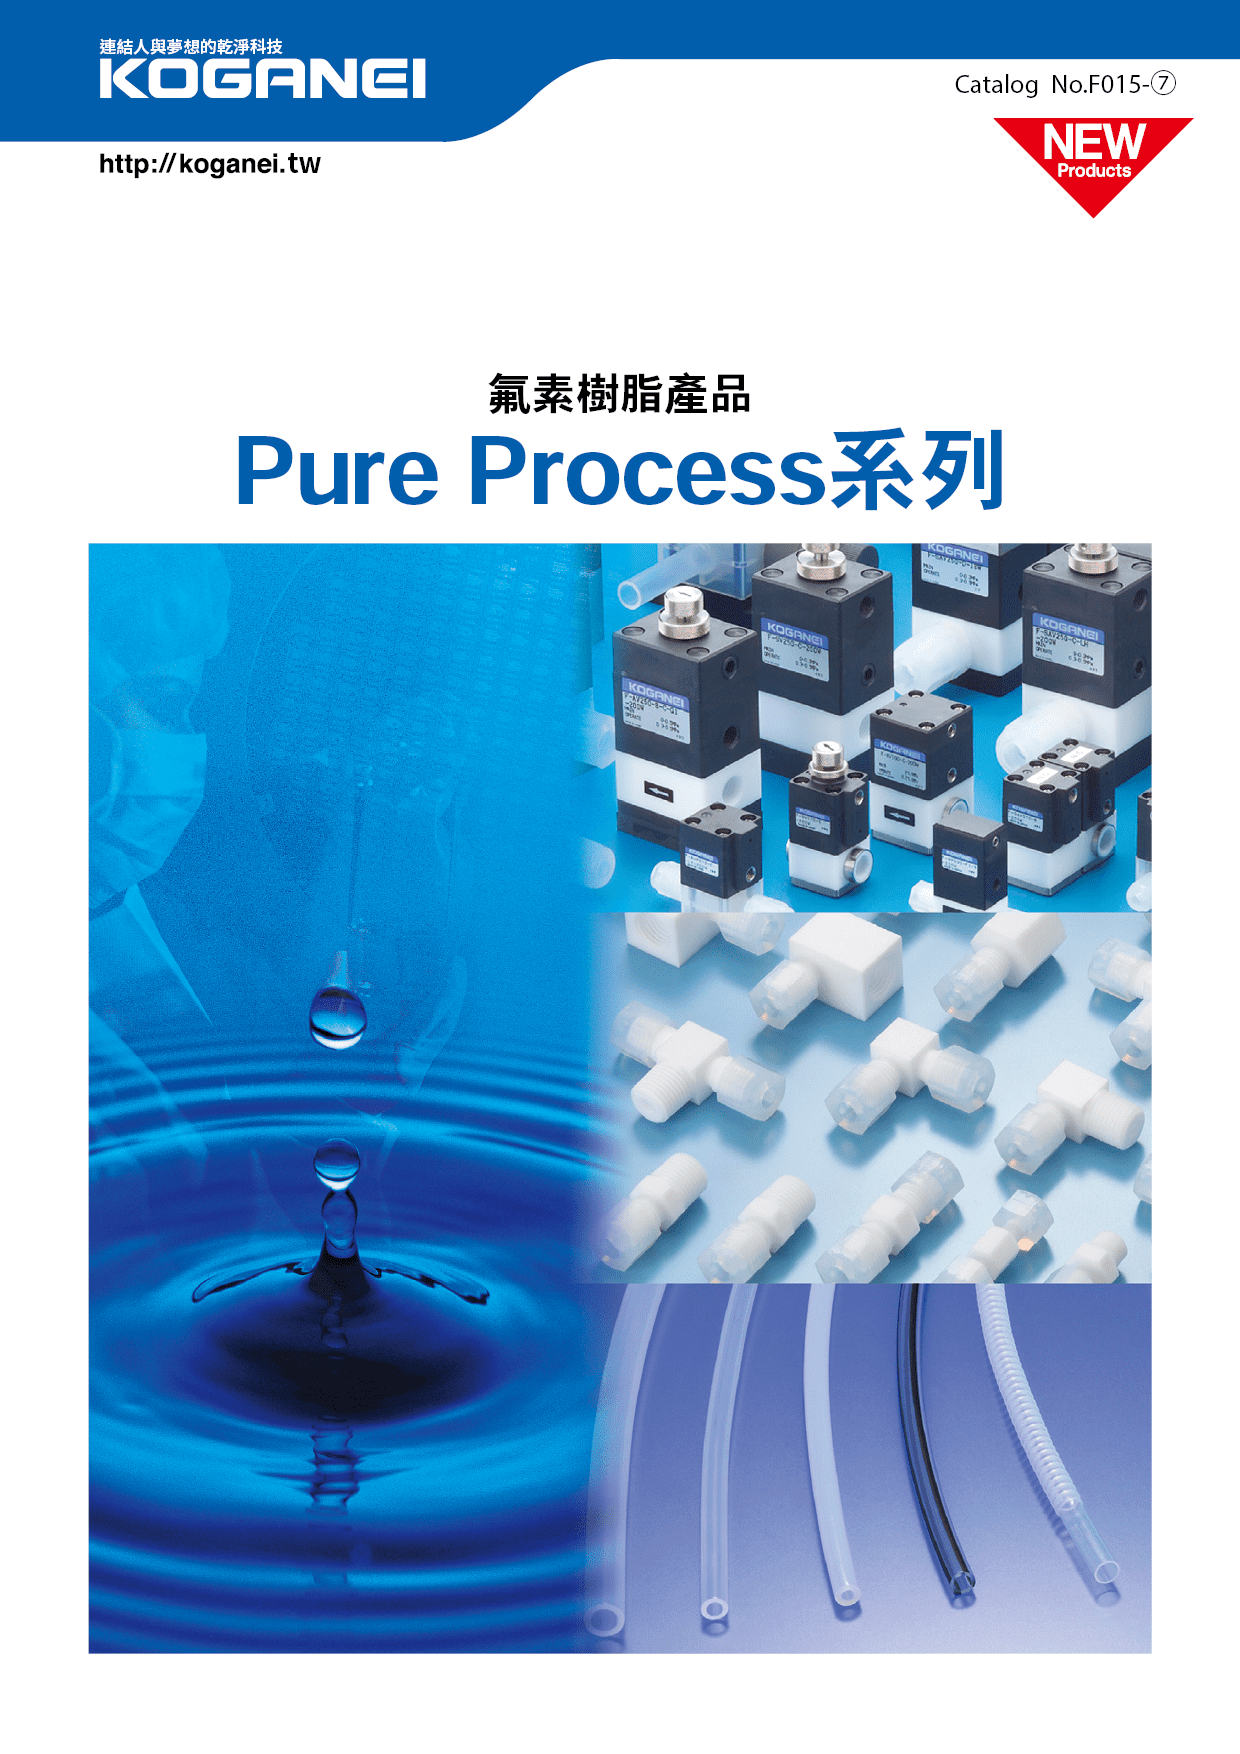 氟素樹脂產品Pure Process系列-產品特色1(藥液開關閥)